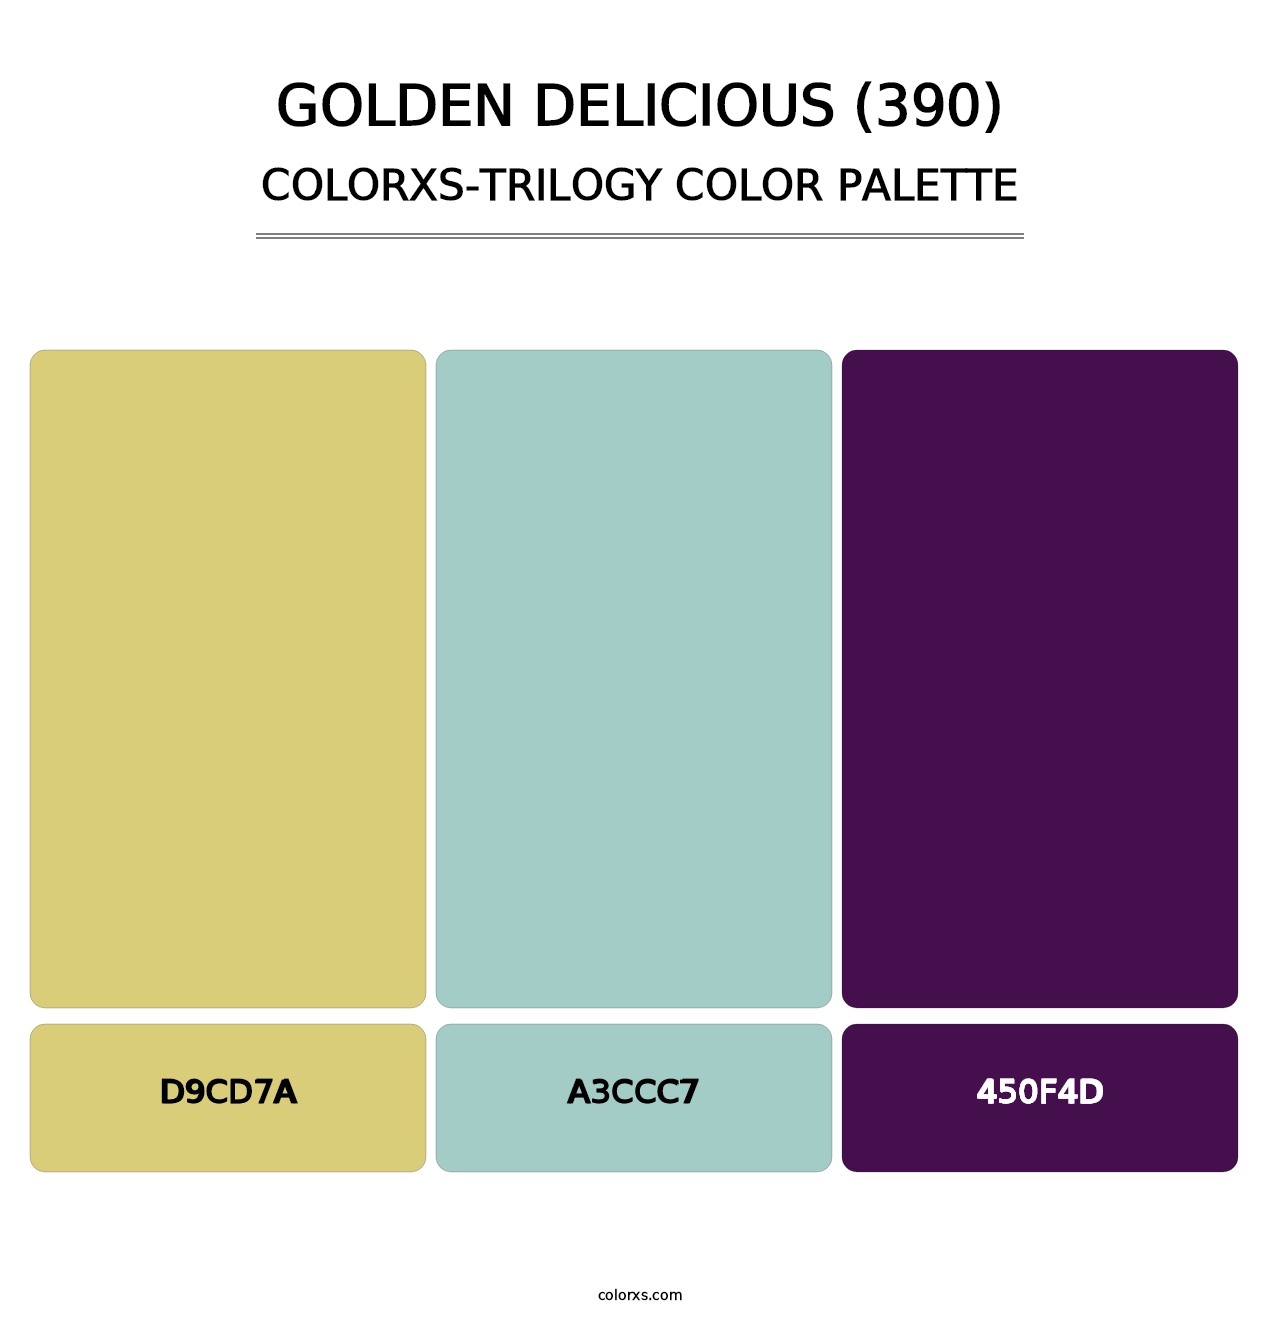 Golden Delicious (390) - Colorxs Trilogy Palette